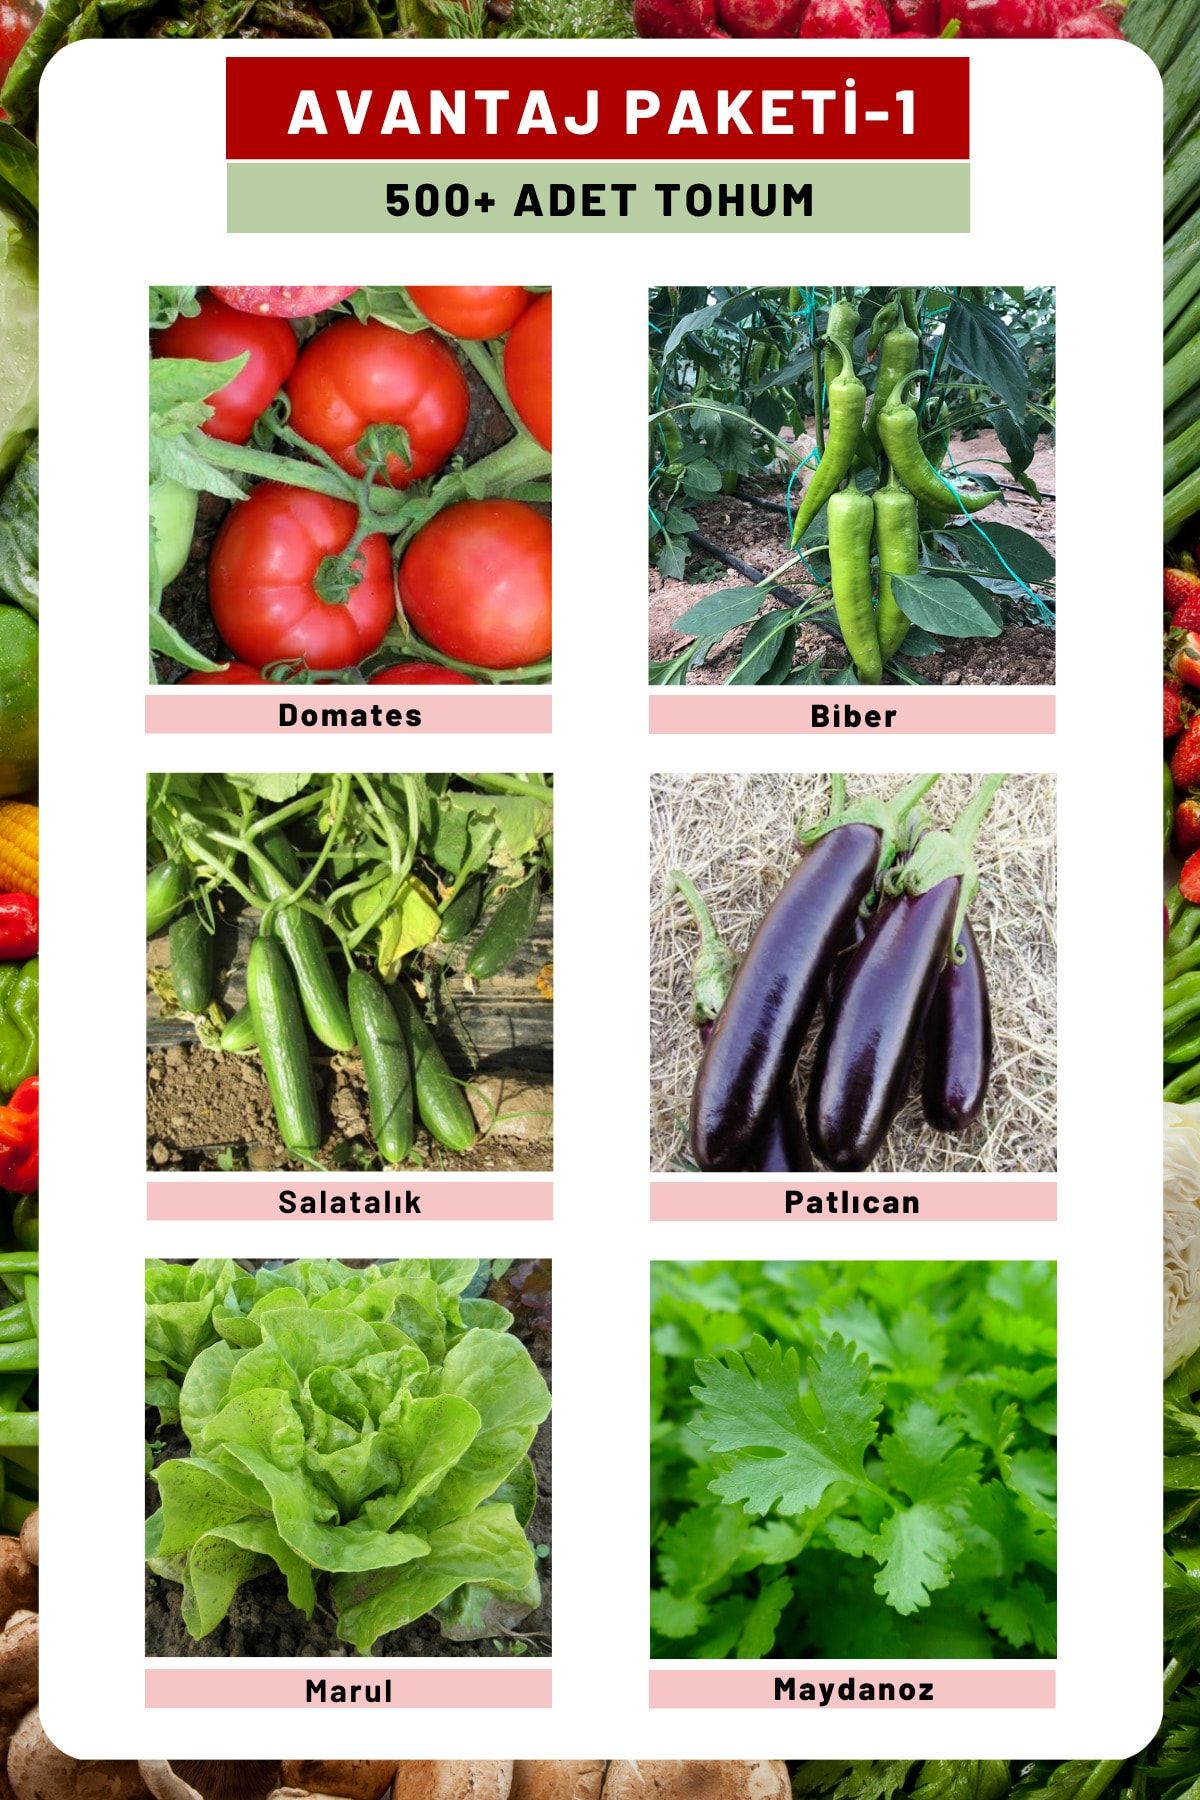 Tohum Seç Avantaj Paketi-1 Domates, Biber, Hıyar, Patlıcan, Maydanoz, Marul Tohumları, Toplam 300 Adet Tohum